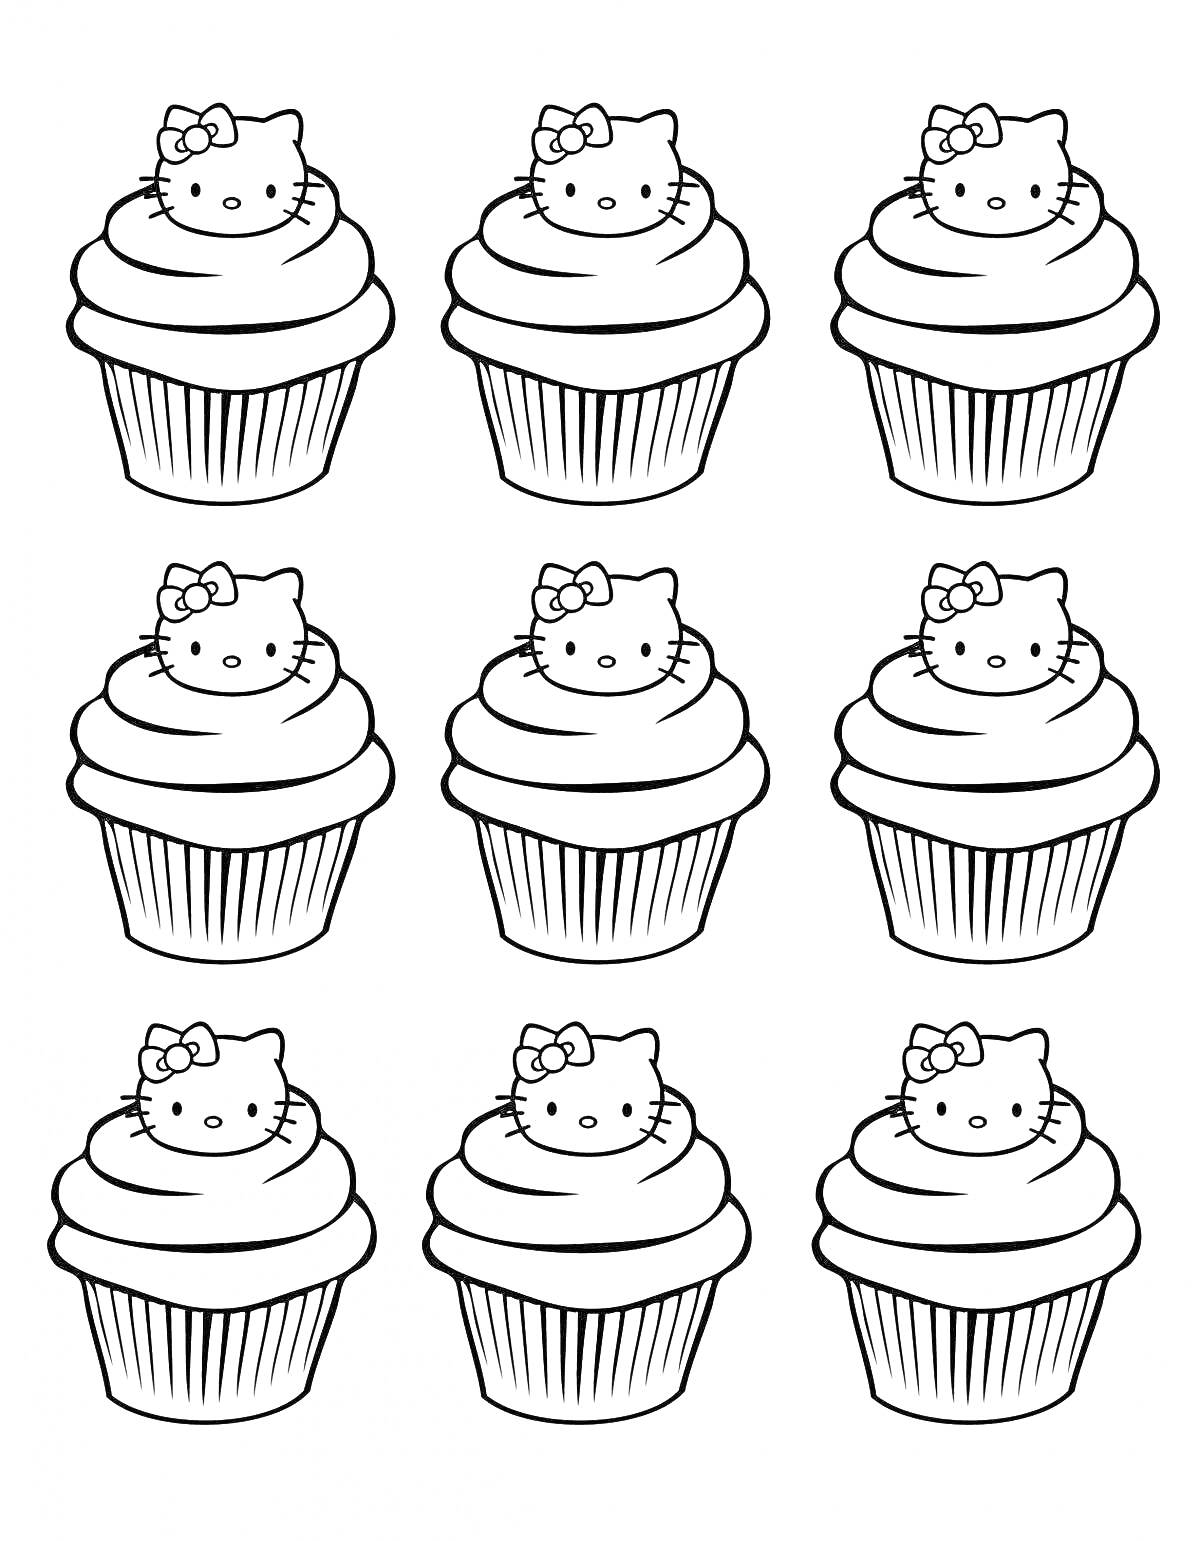 девять кексов с изображением кота с бантиком на вершине каждого кекса